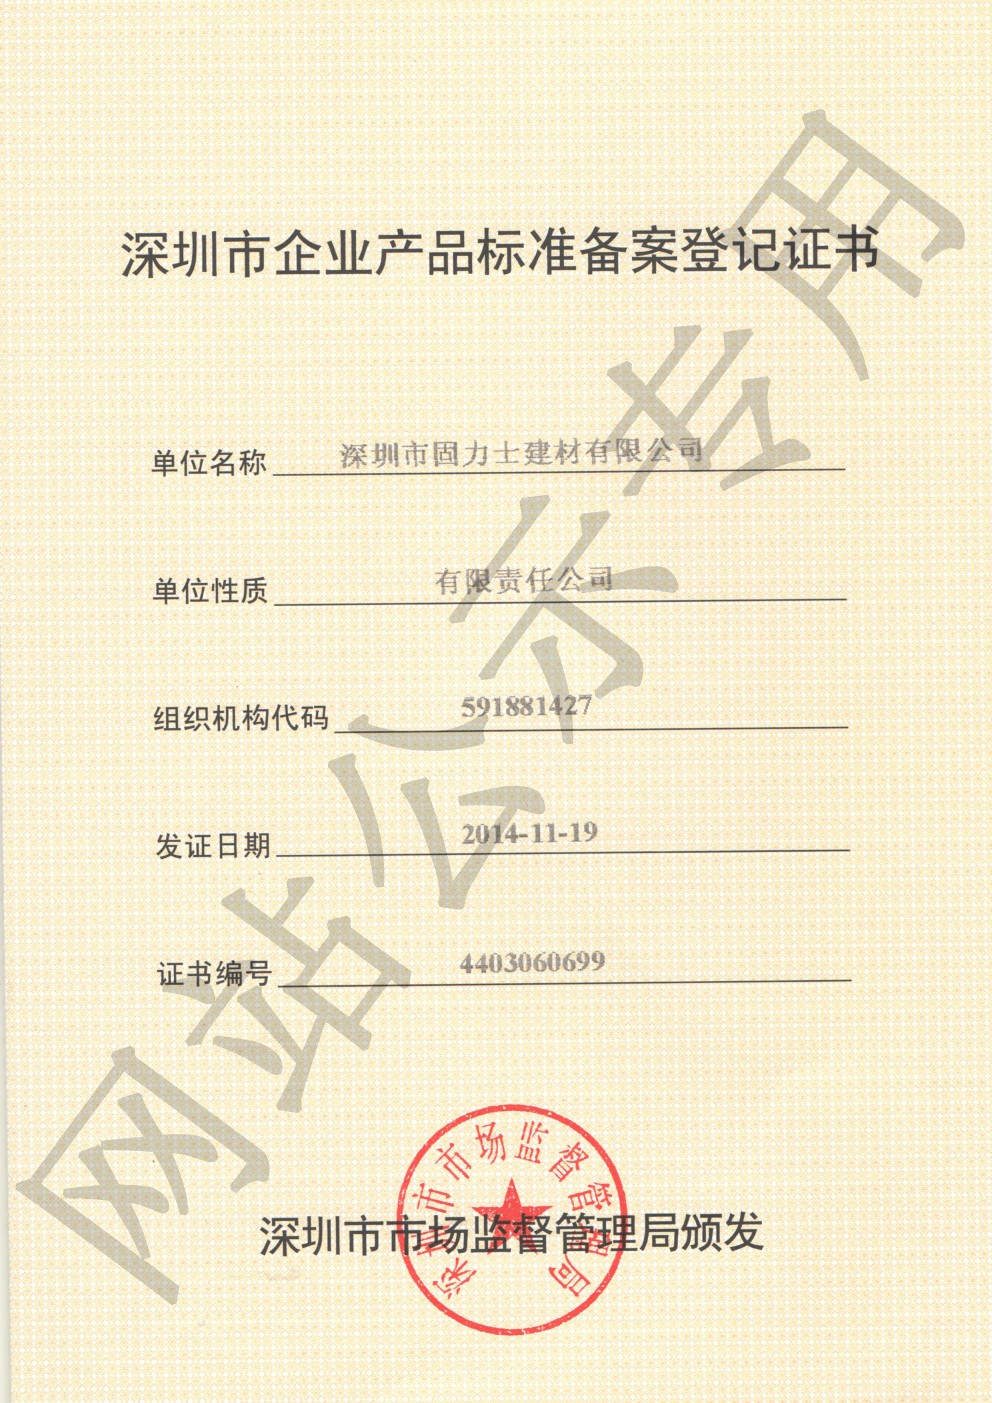 游仙企业产品标准登记证书